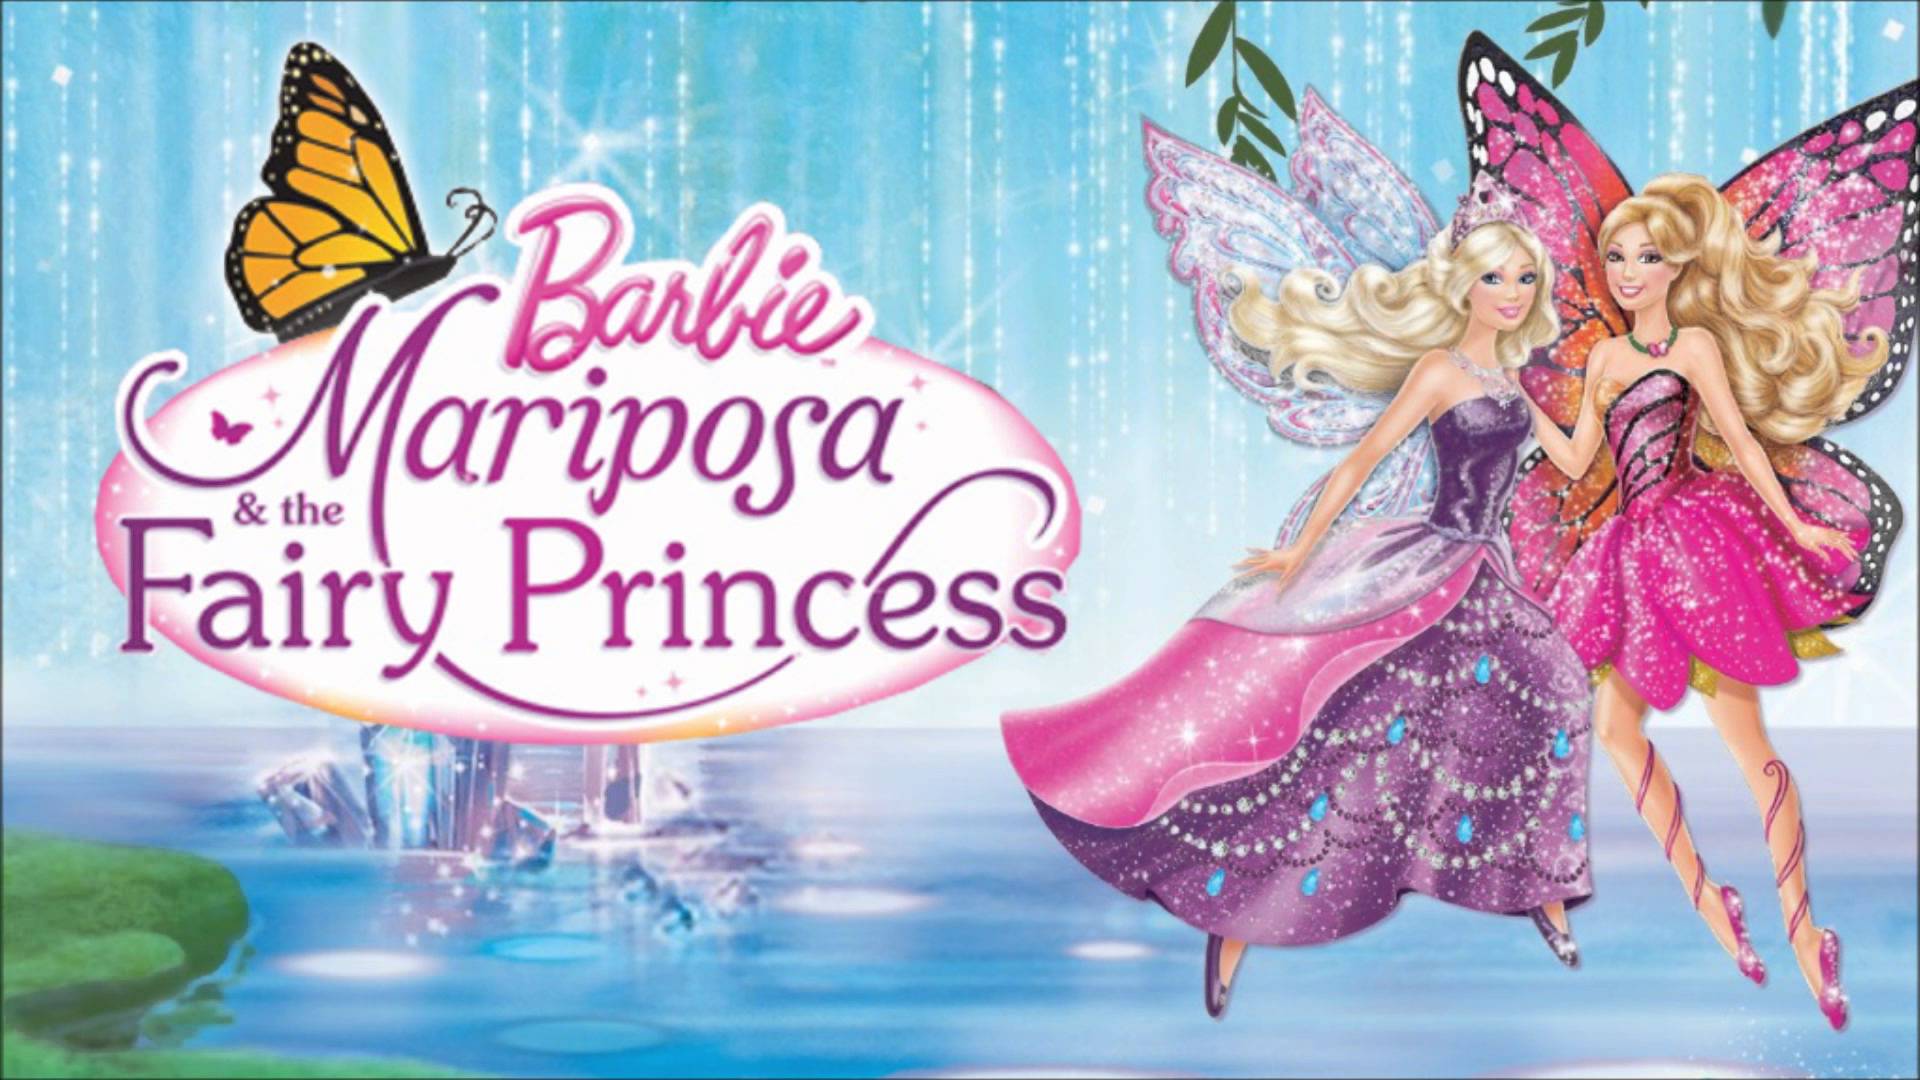 Barbie Doll Wala - Princess Graciella Wallpaper Download | MobCup